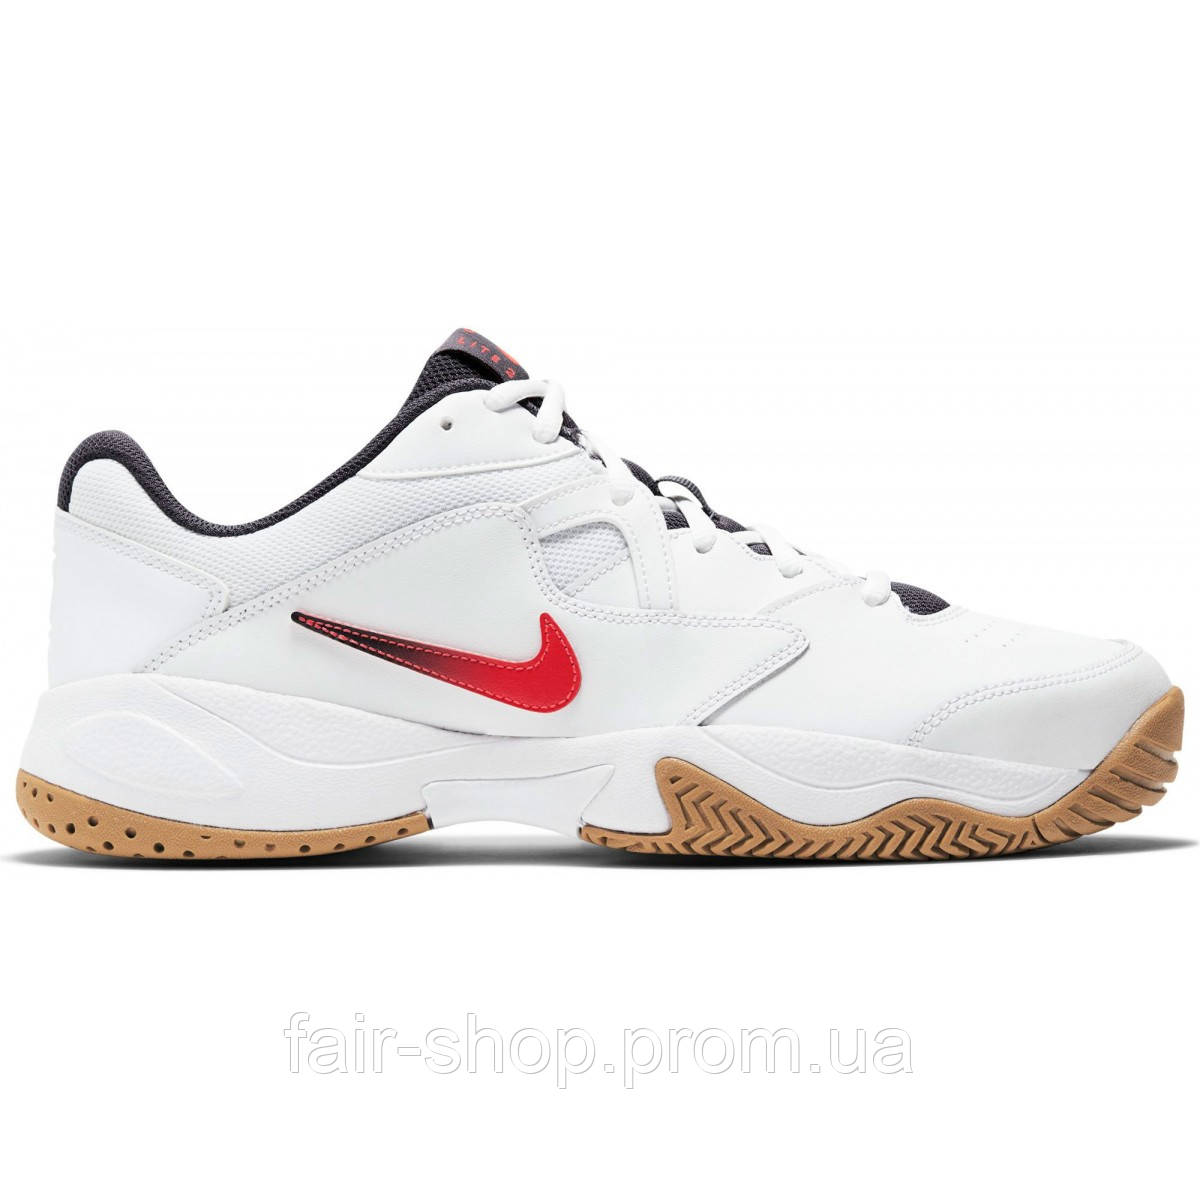 Кроссовки для тенниса Nike COURT LITE 2 - Оригинал, цена 2 097 грн., купить  в Луцке — Prom.ua (ID#1223712222)